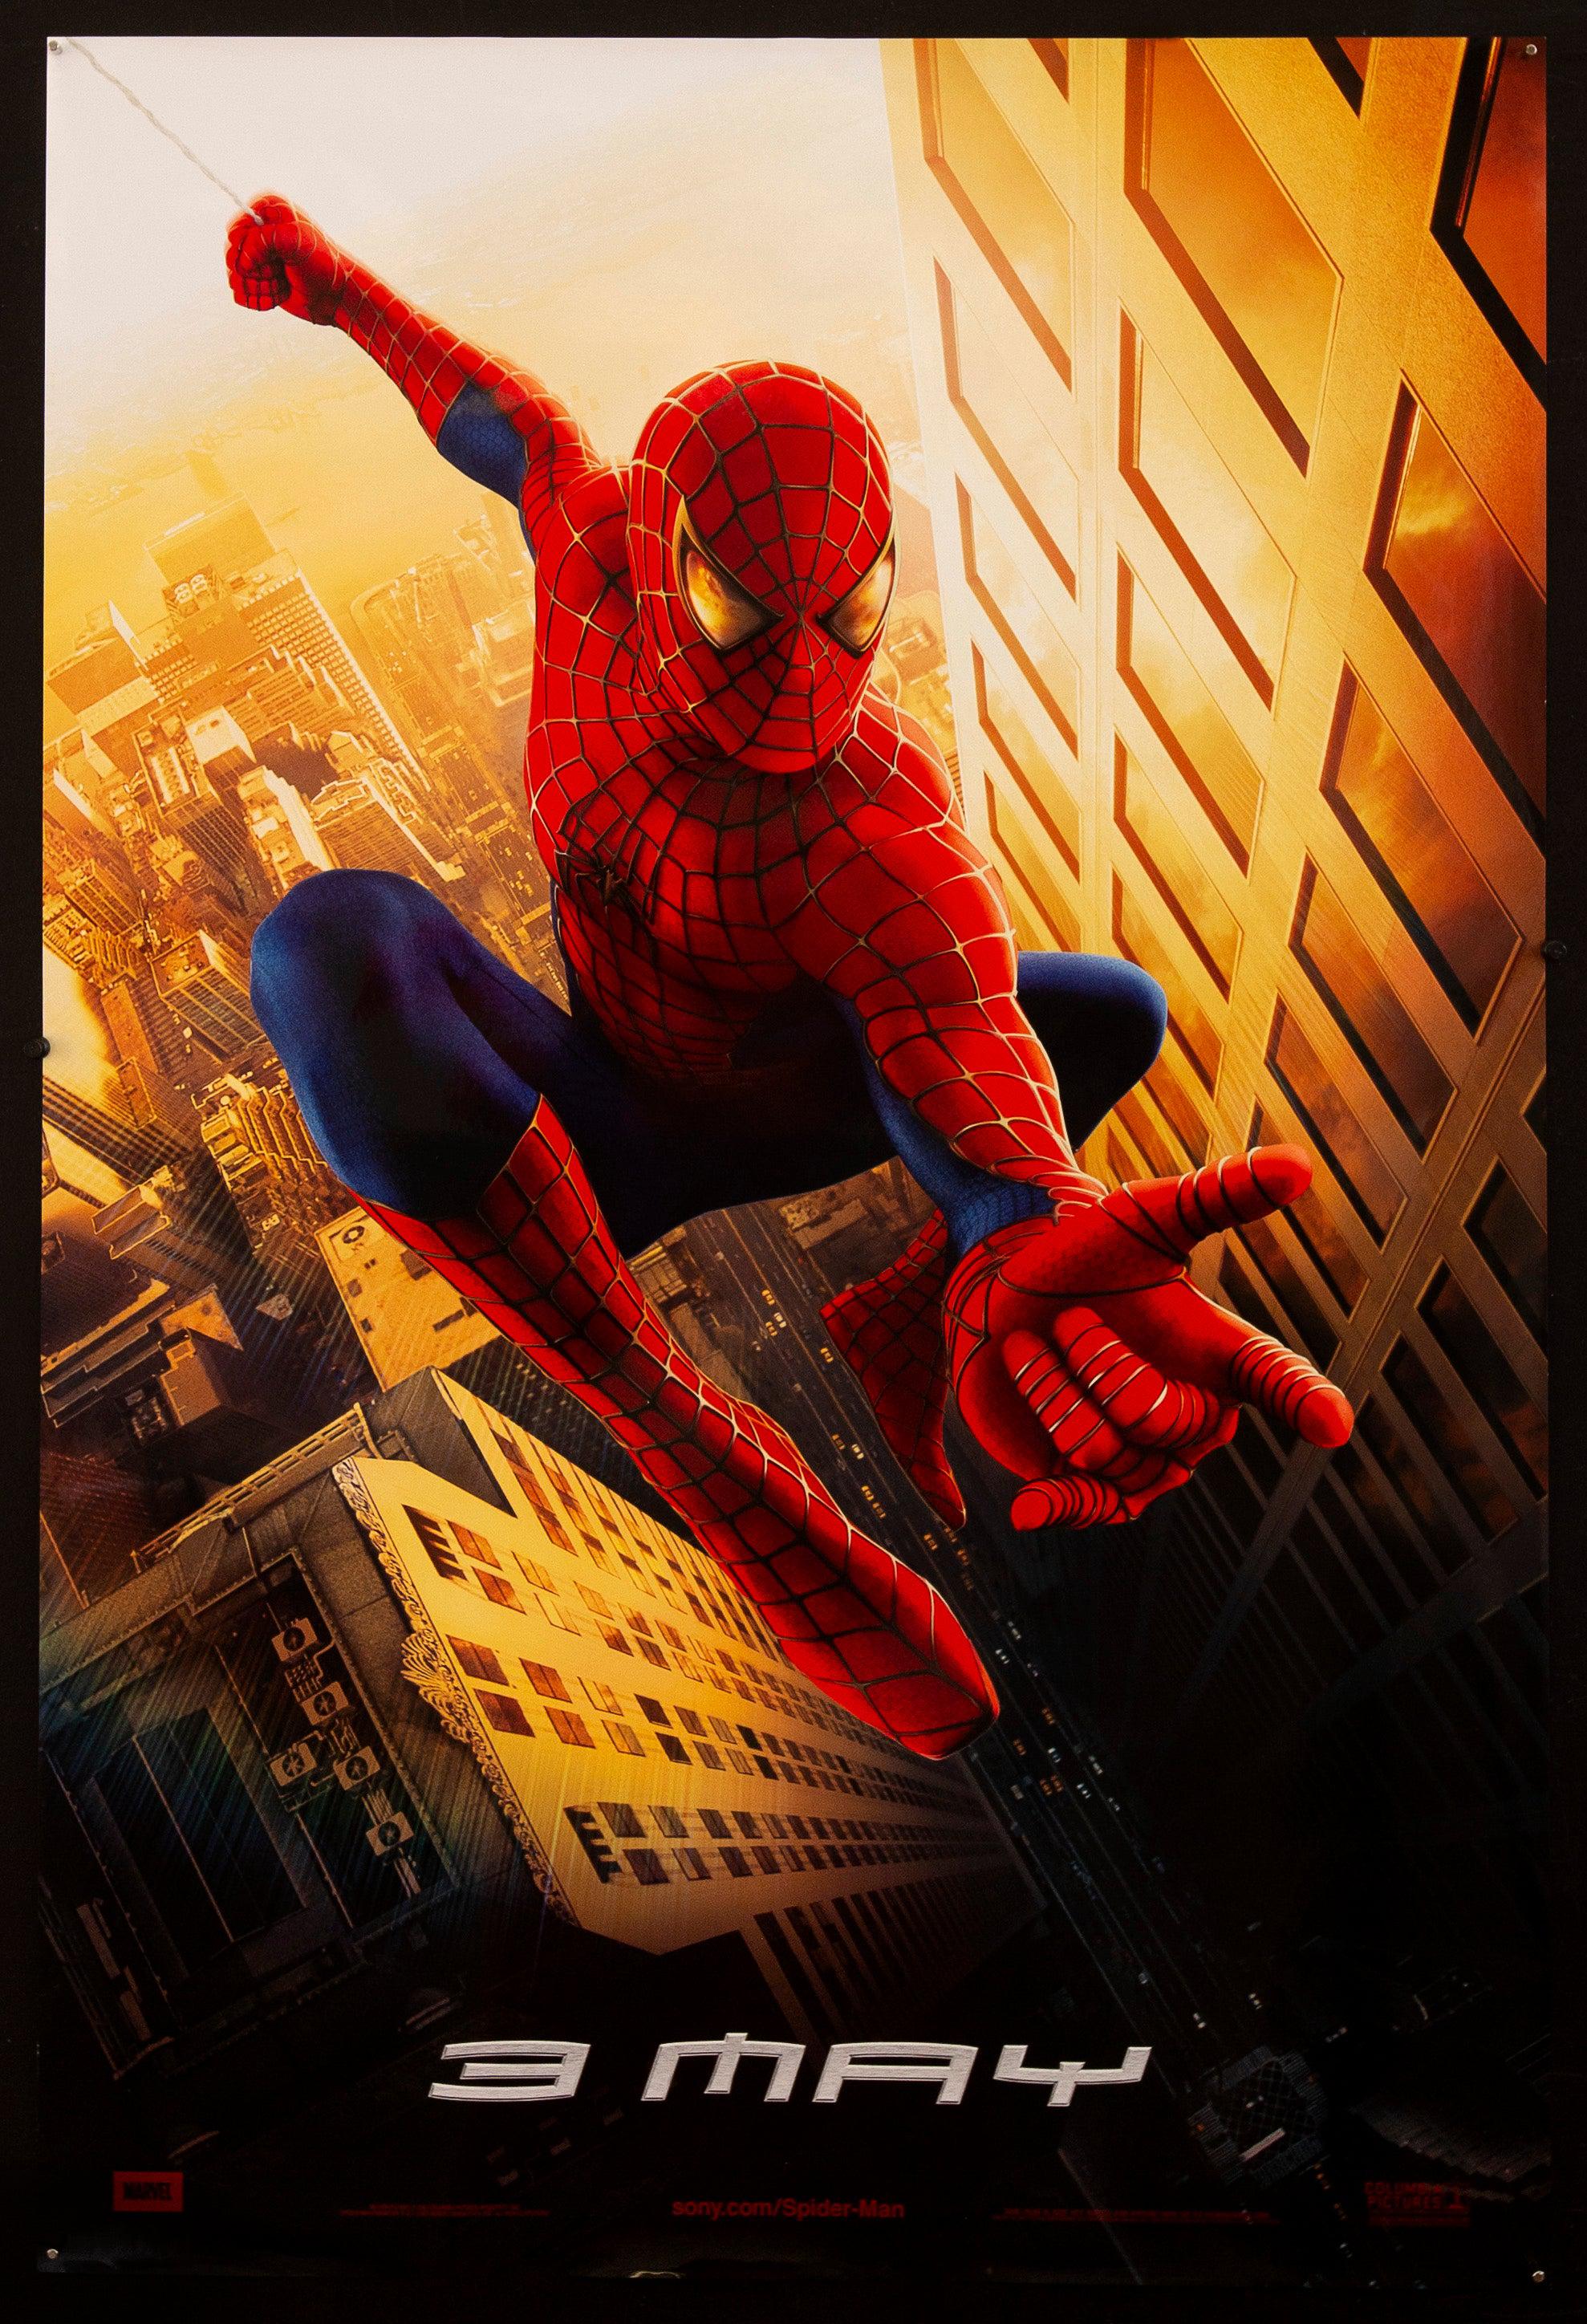 Spider-Man Movie Poster 2002 1 Sheet (27x41)